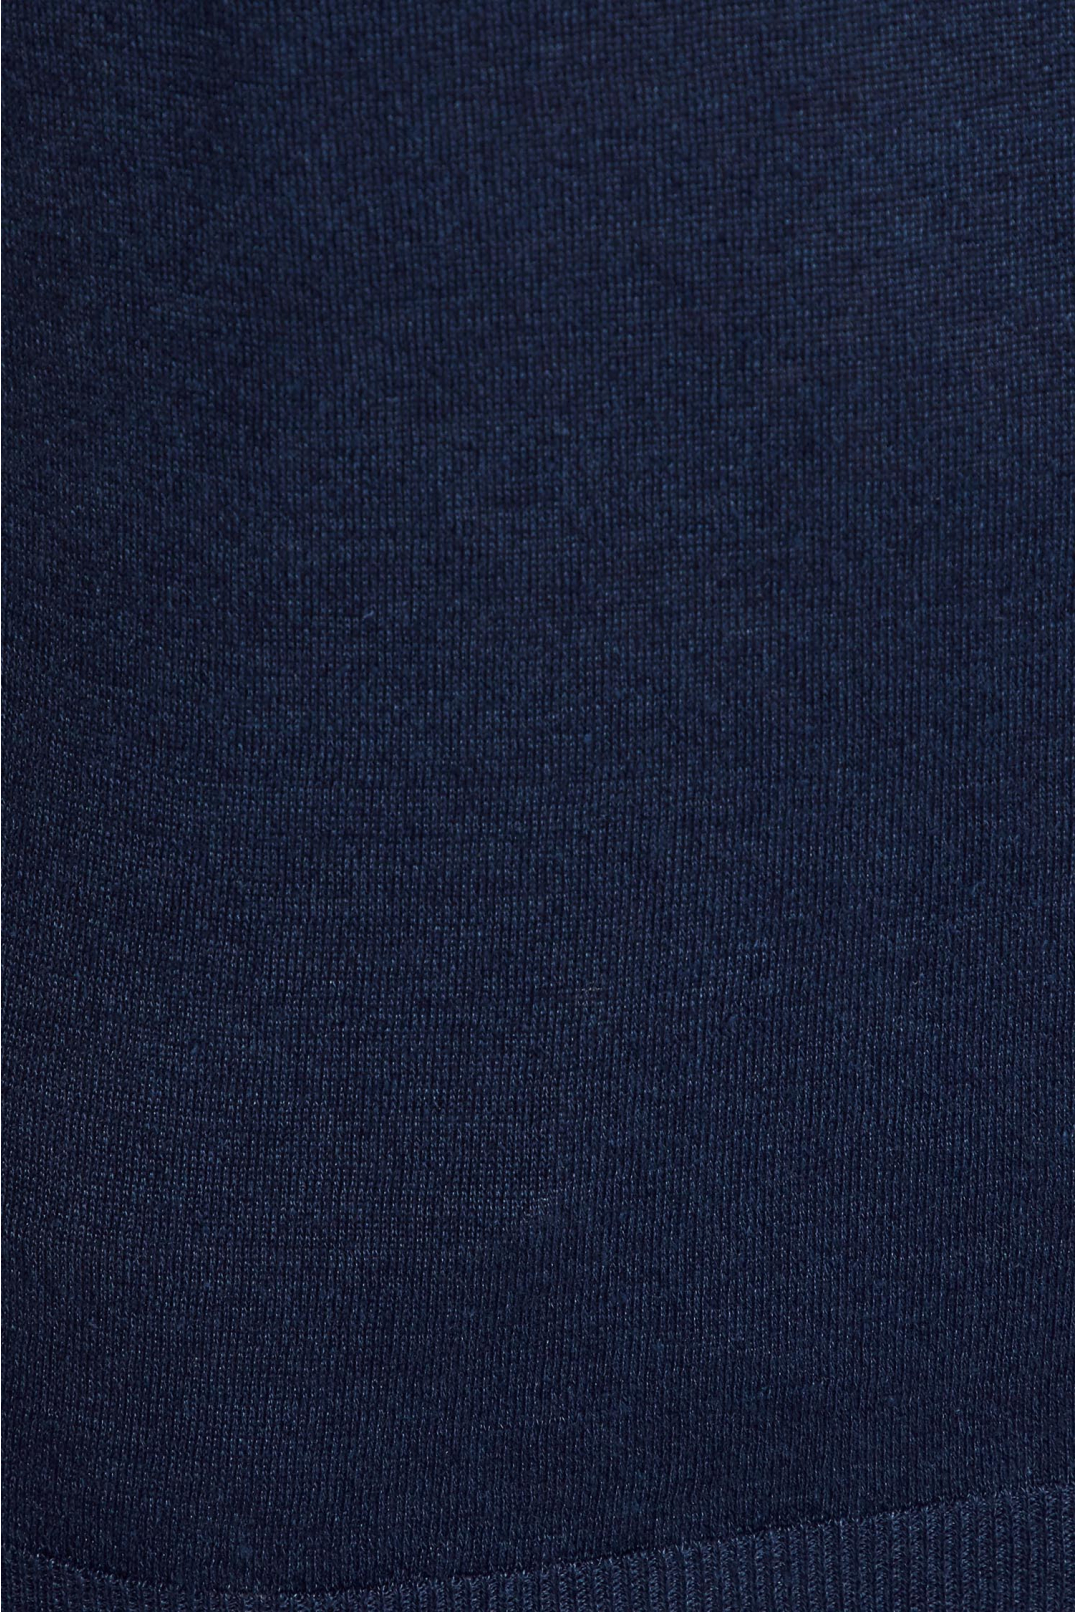 Чоловічий темно-синій лляний джемпер з коротким рукавом - 4